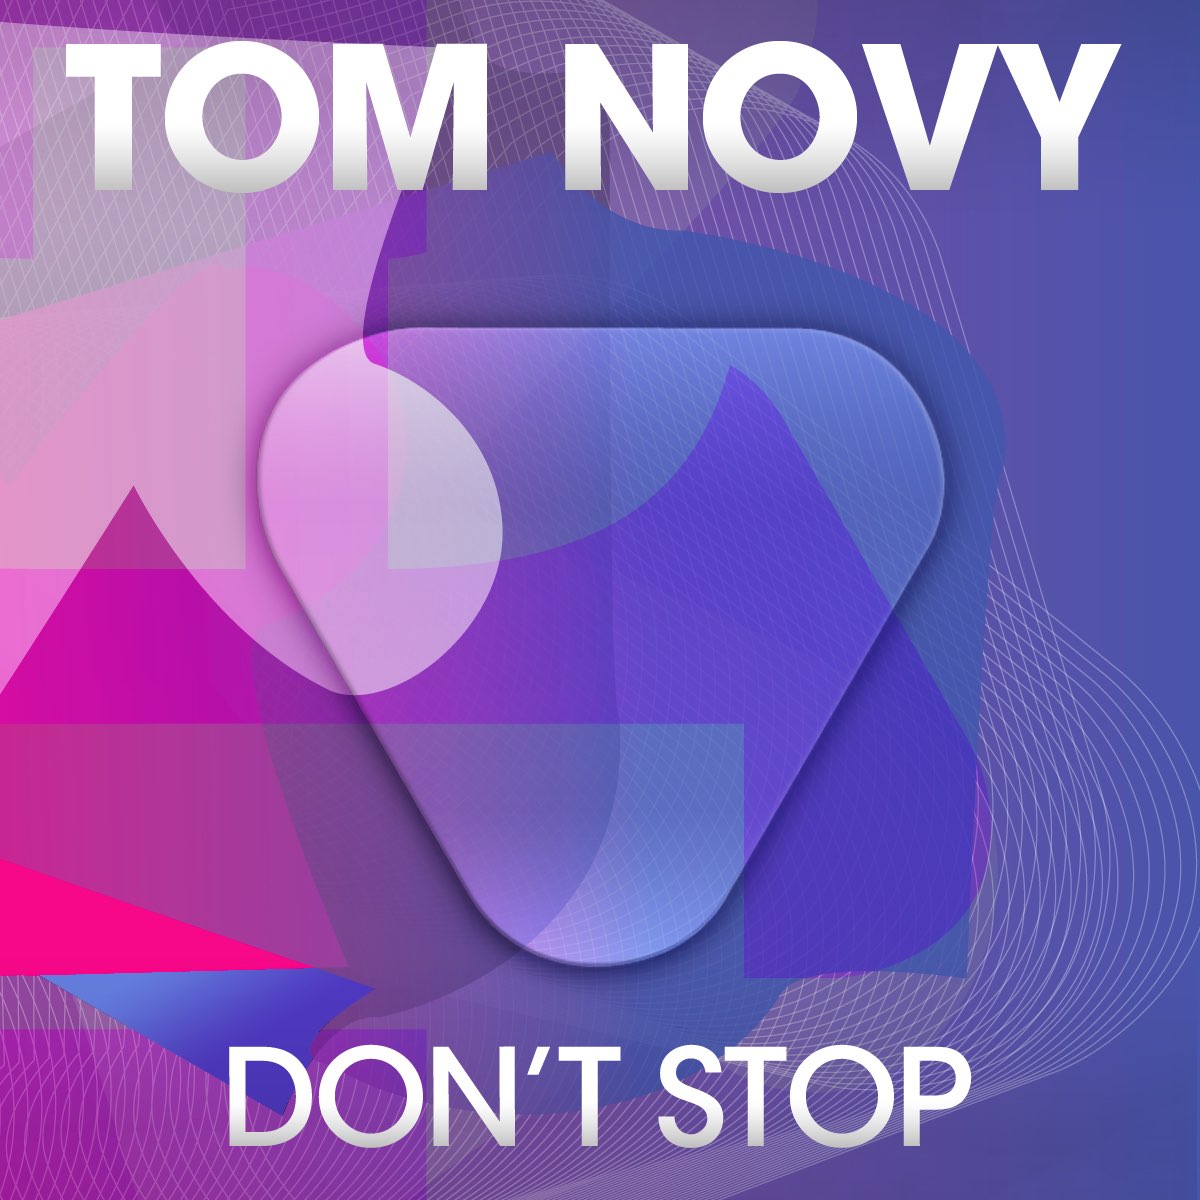 Tom novy. Tom novy Dance the way i feel. Stop Tom dferi. Tom novy & Morgenroth - creator.